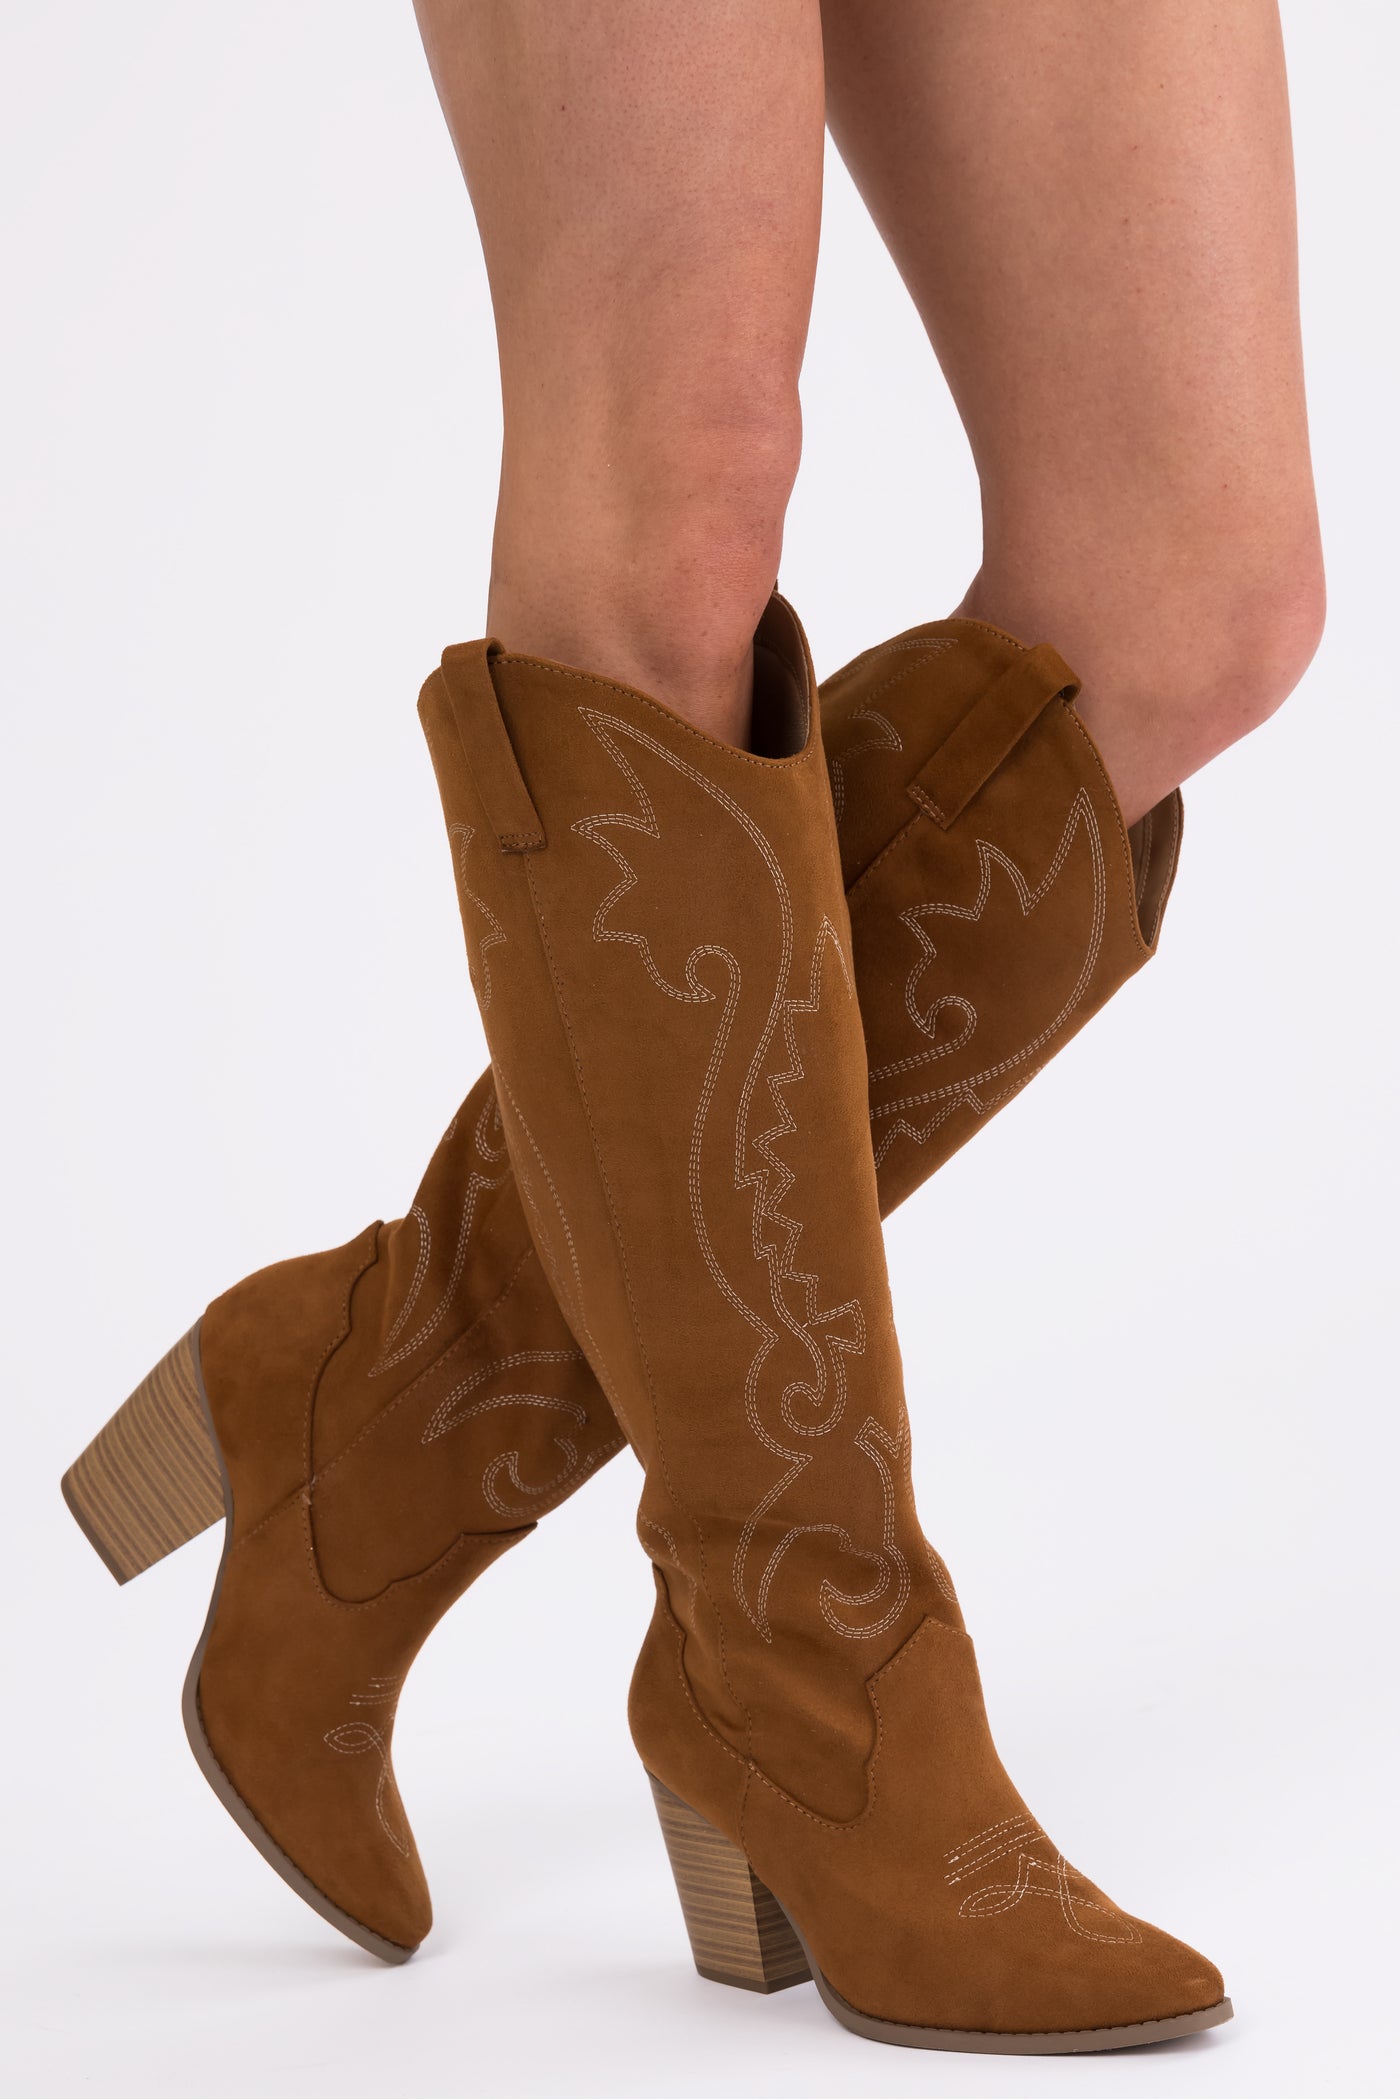 Caramel Knee High Block High Heel Western Boots